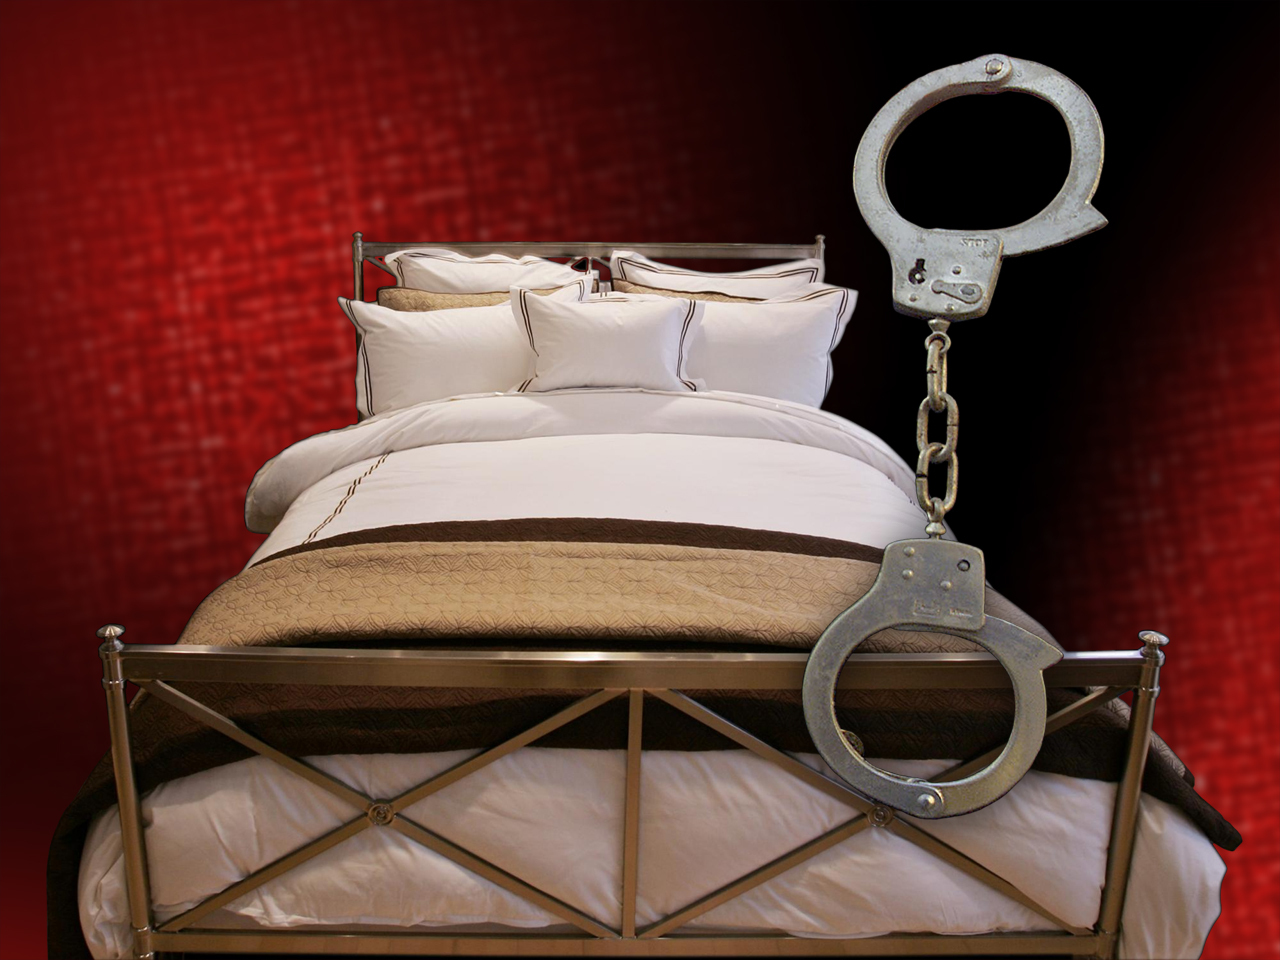 Мужик привязал женщину кровати. Наручниками к кровати. Прикованная наручниками к кровати. Кровать с цепями и наручниками. Прикованная к постели.